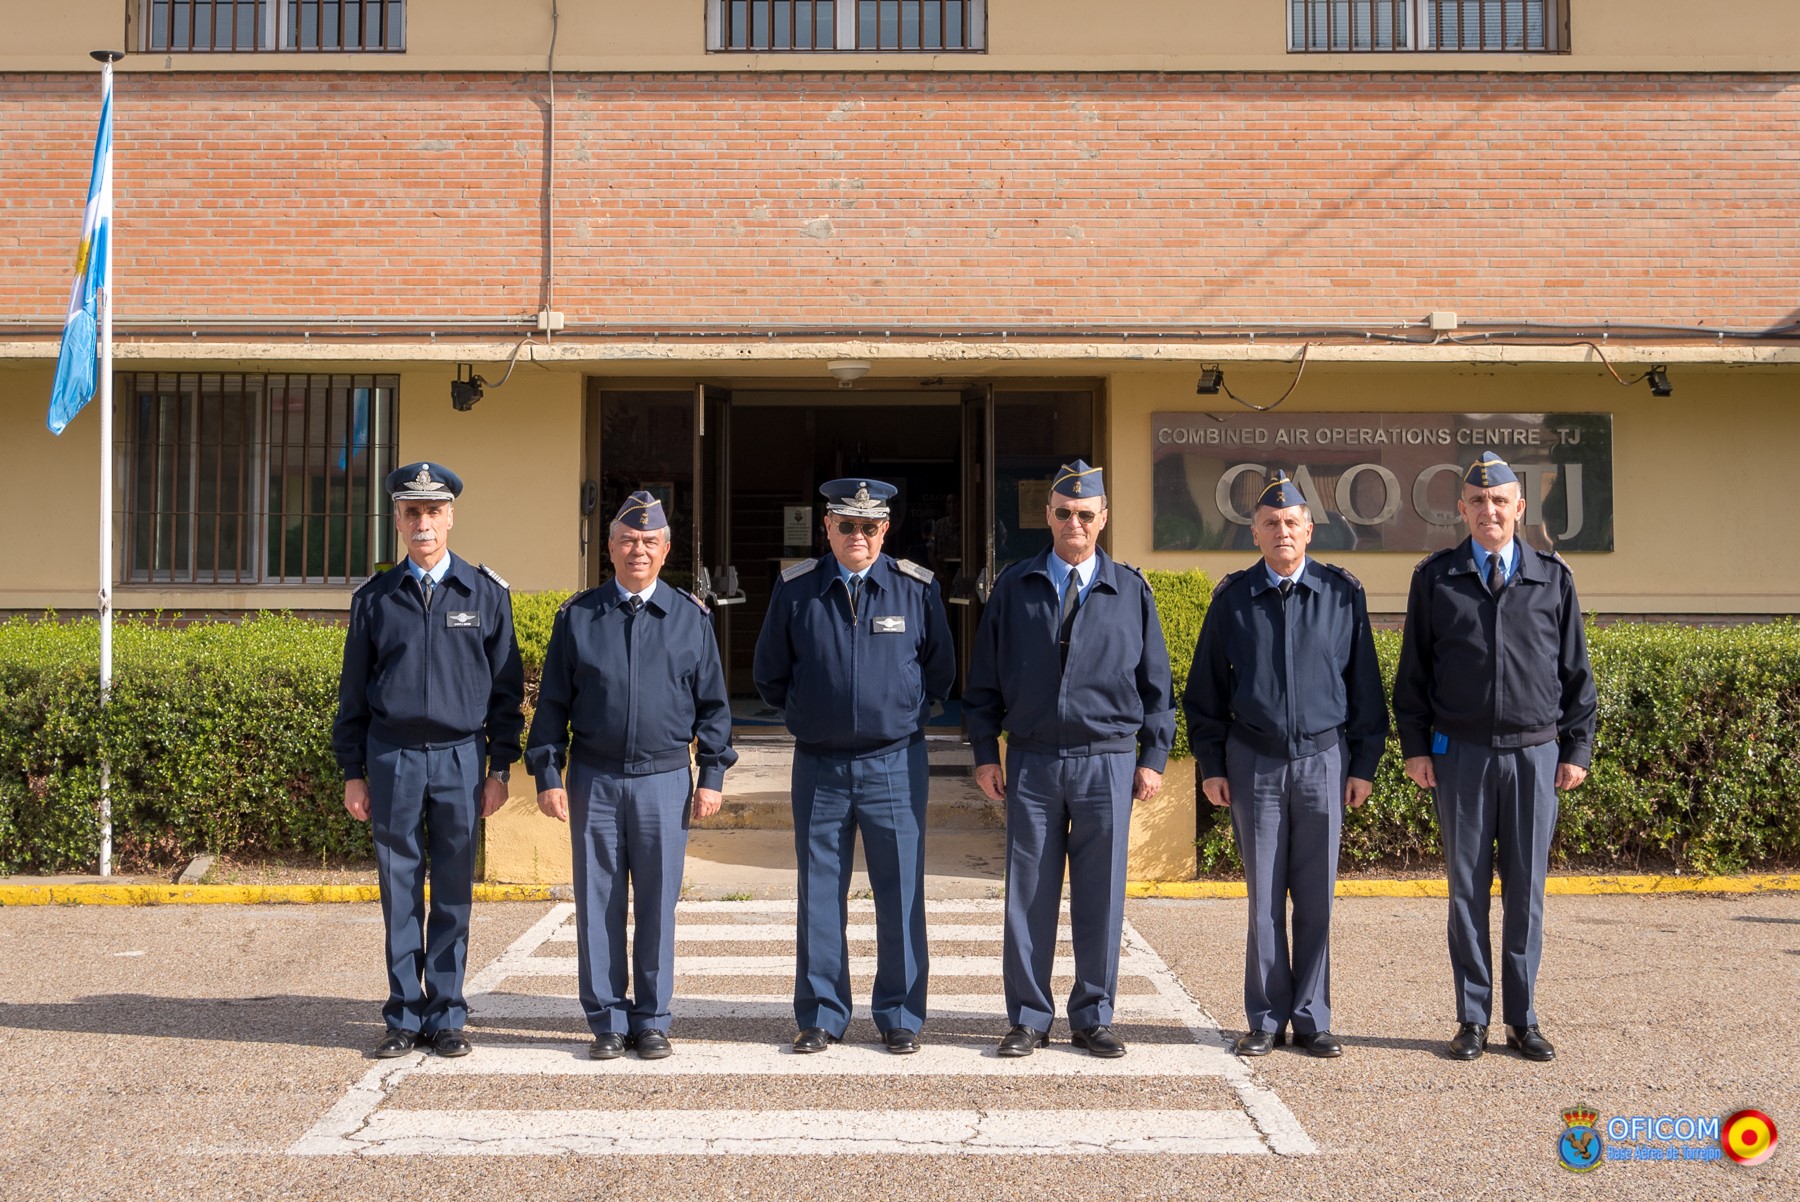 El Jefe del Estado Mayor de la Fuerza Aérea Argentina visita el Centro de Operaciones Aéreas Combinadas de Torrejón